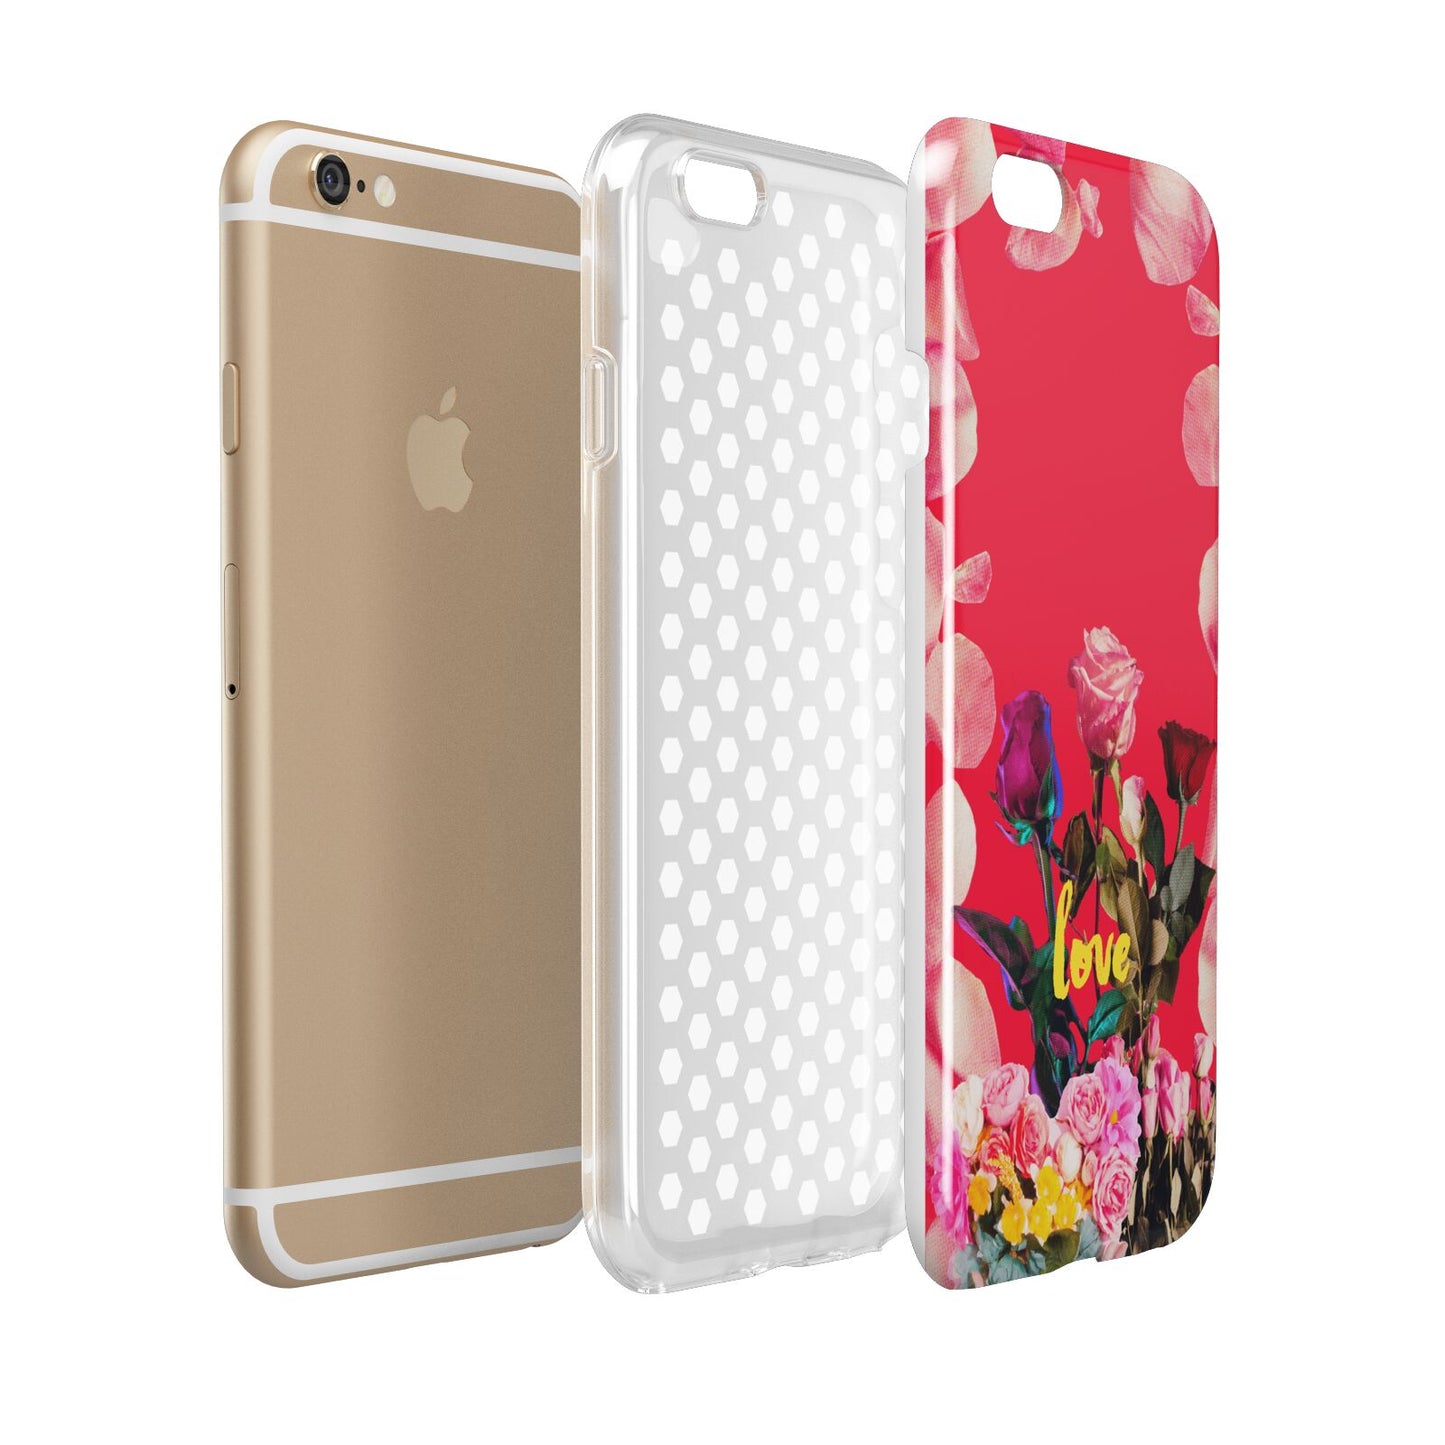 Retro Floral Valentine Apple iPhone 6 3D Tough Case Expanded view